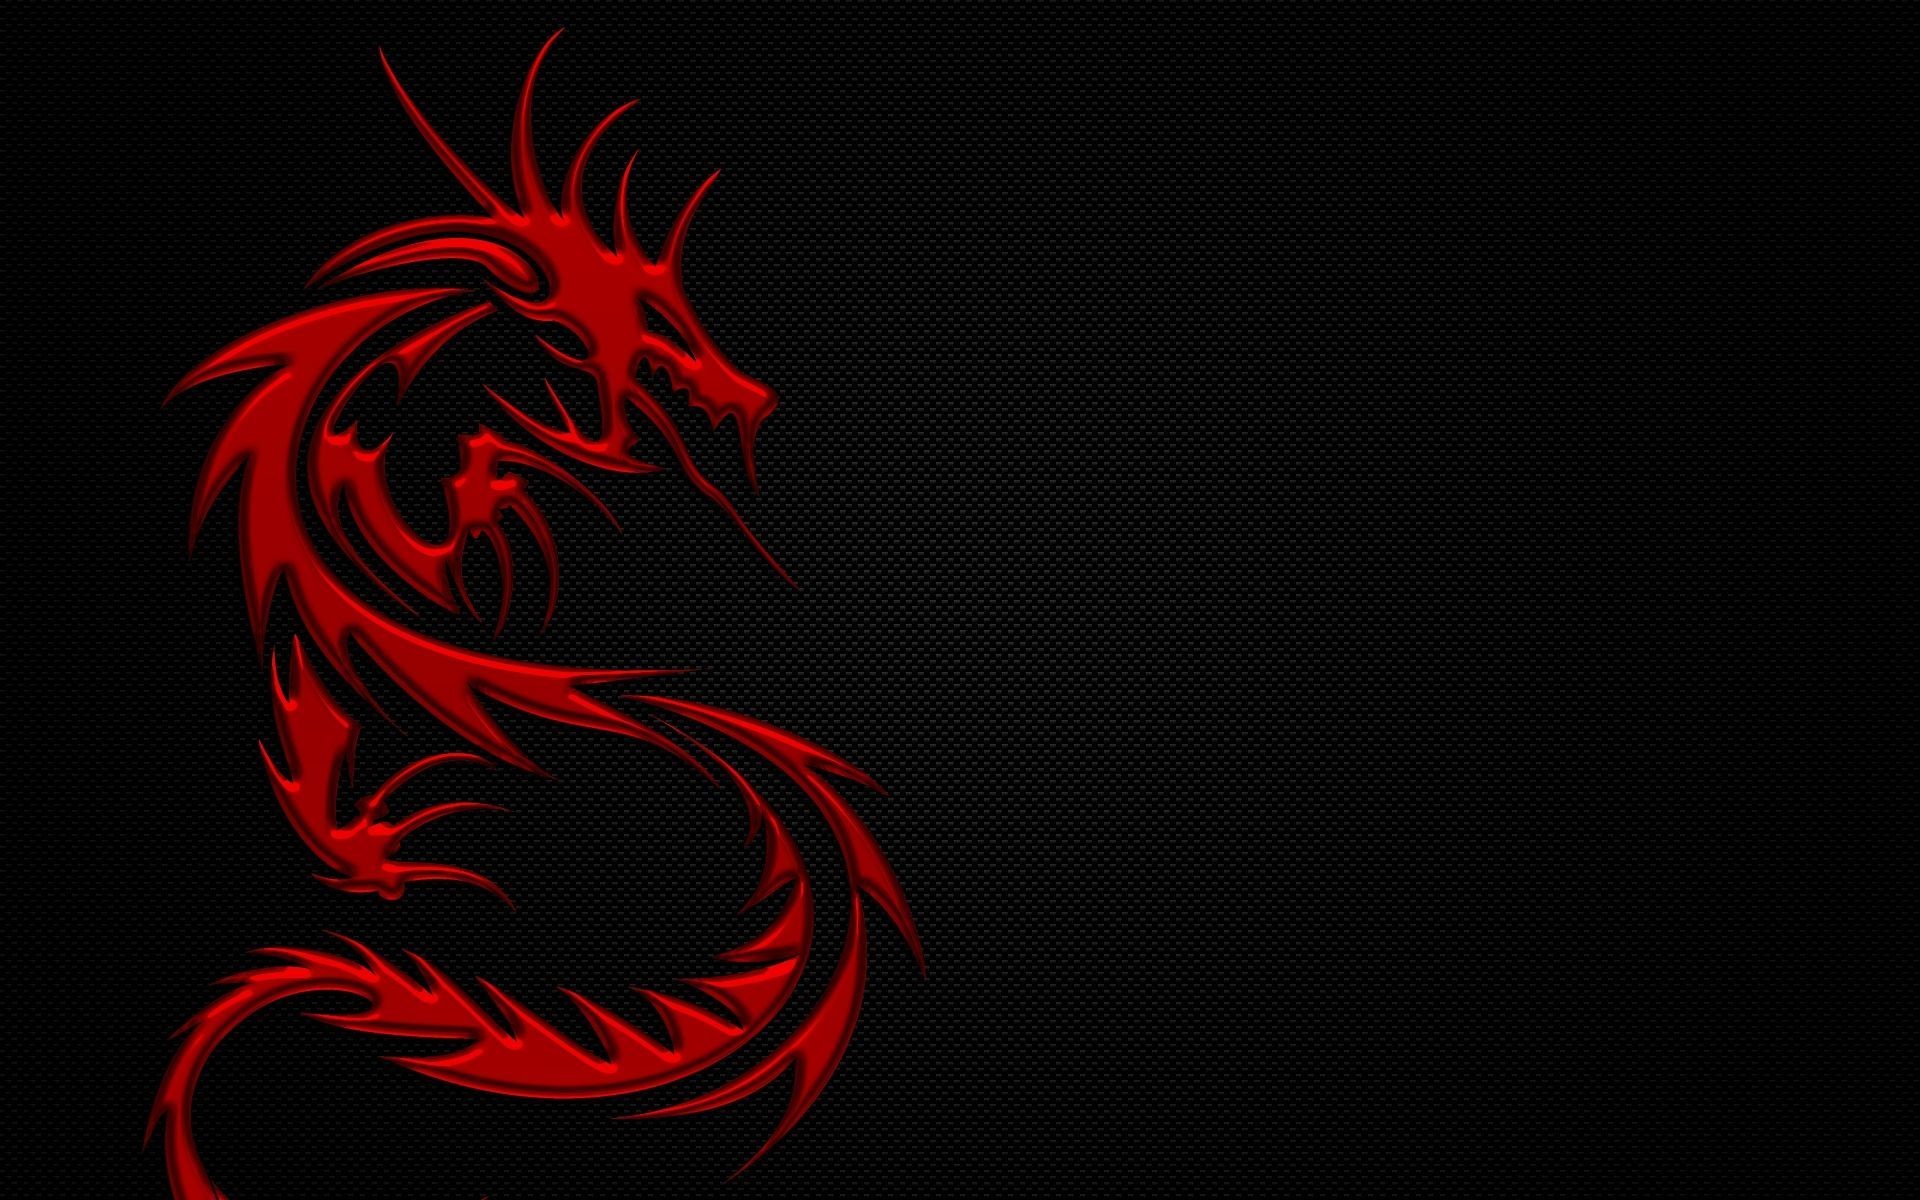 47+] Red Dragon Wallpaper HD - WallpaperSafari